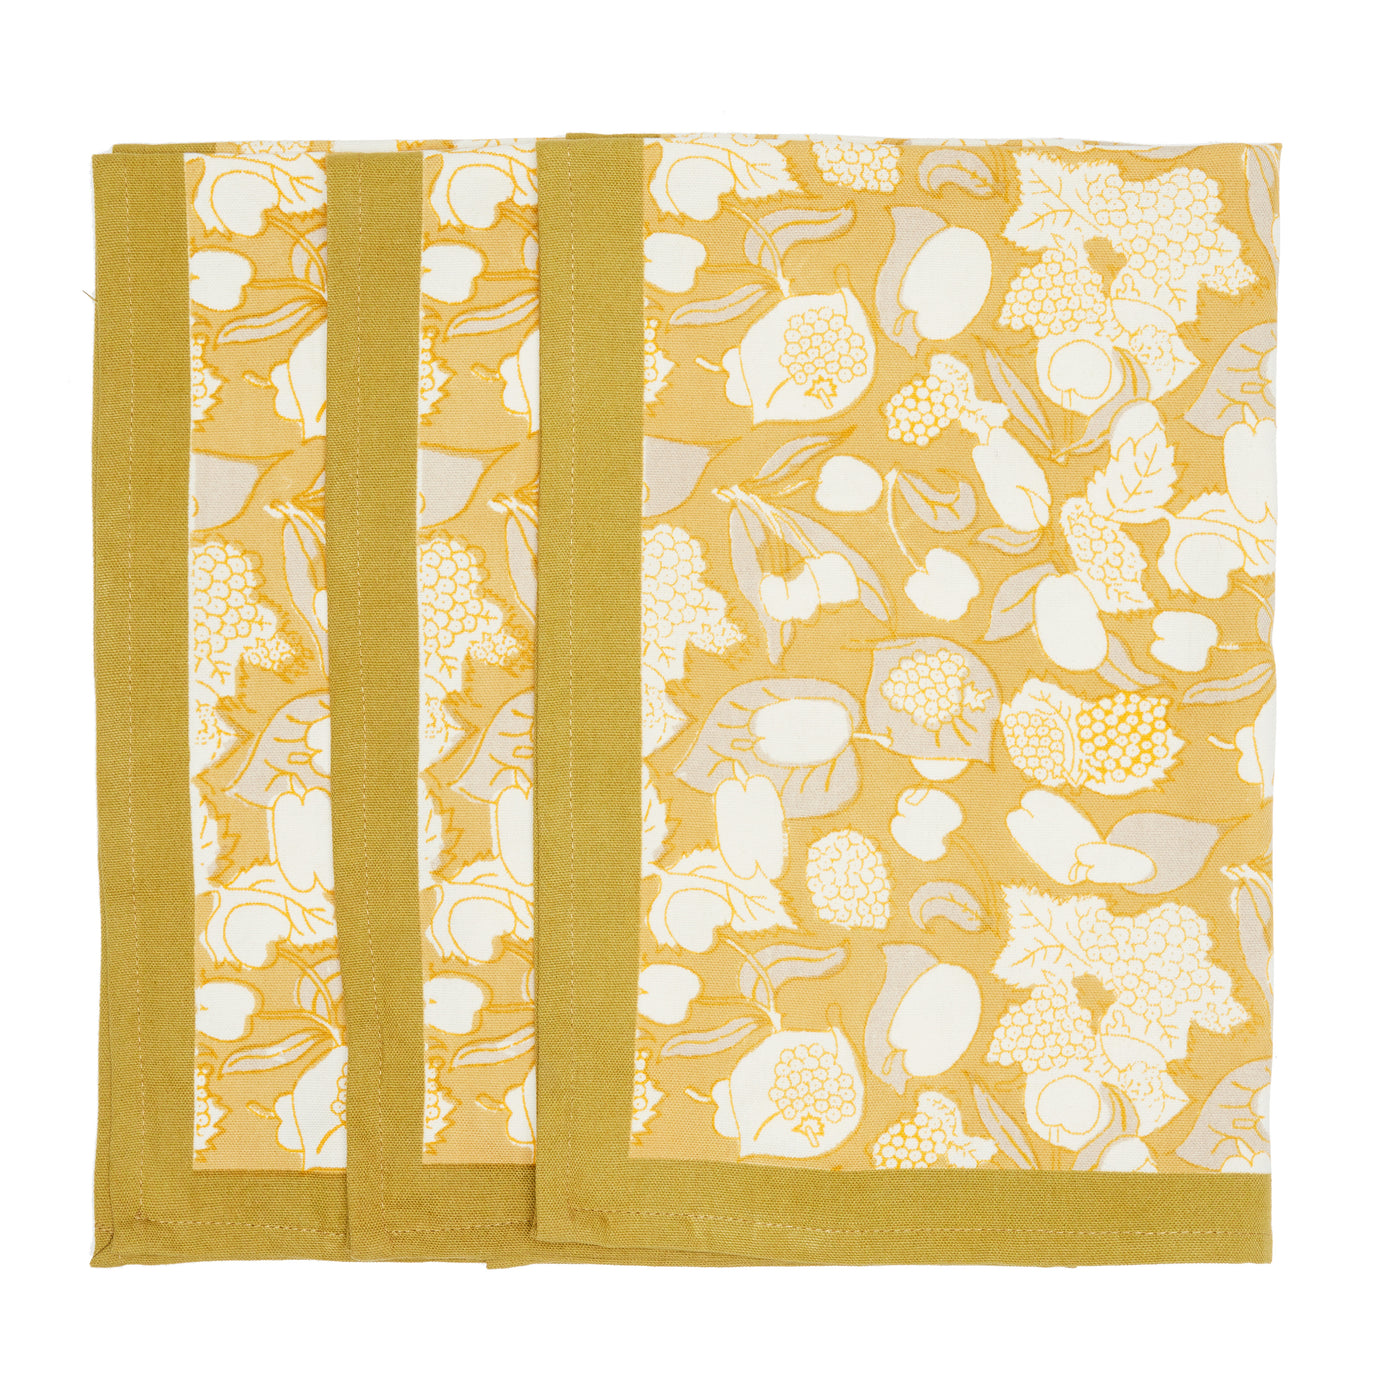 Forest Harvest Tea Towels Grey & Mustard, Set of 3